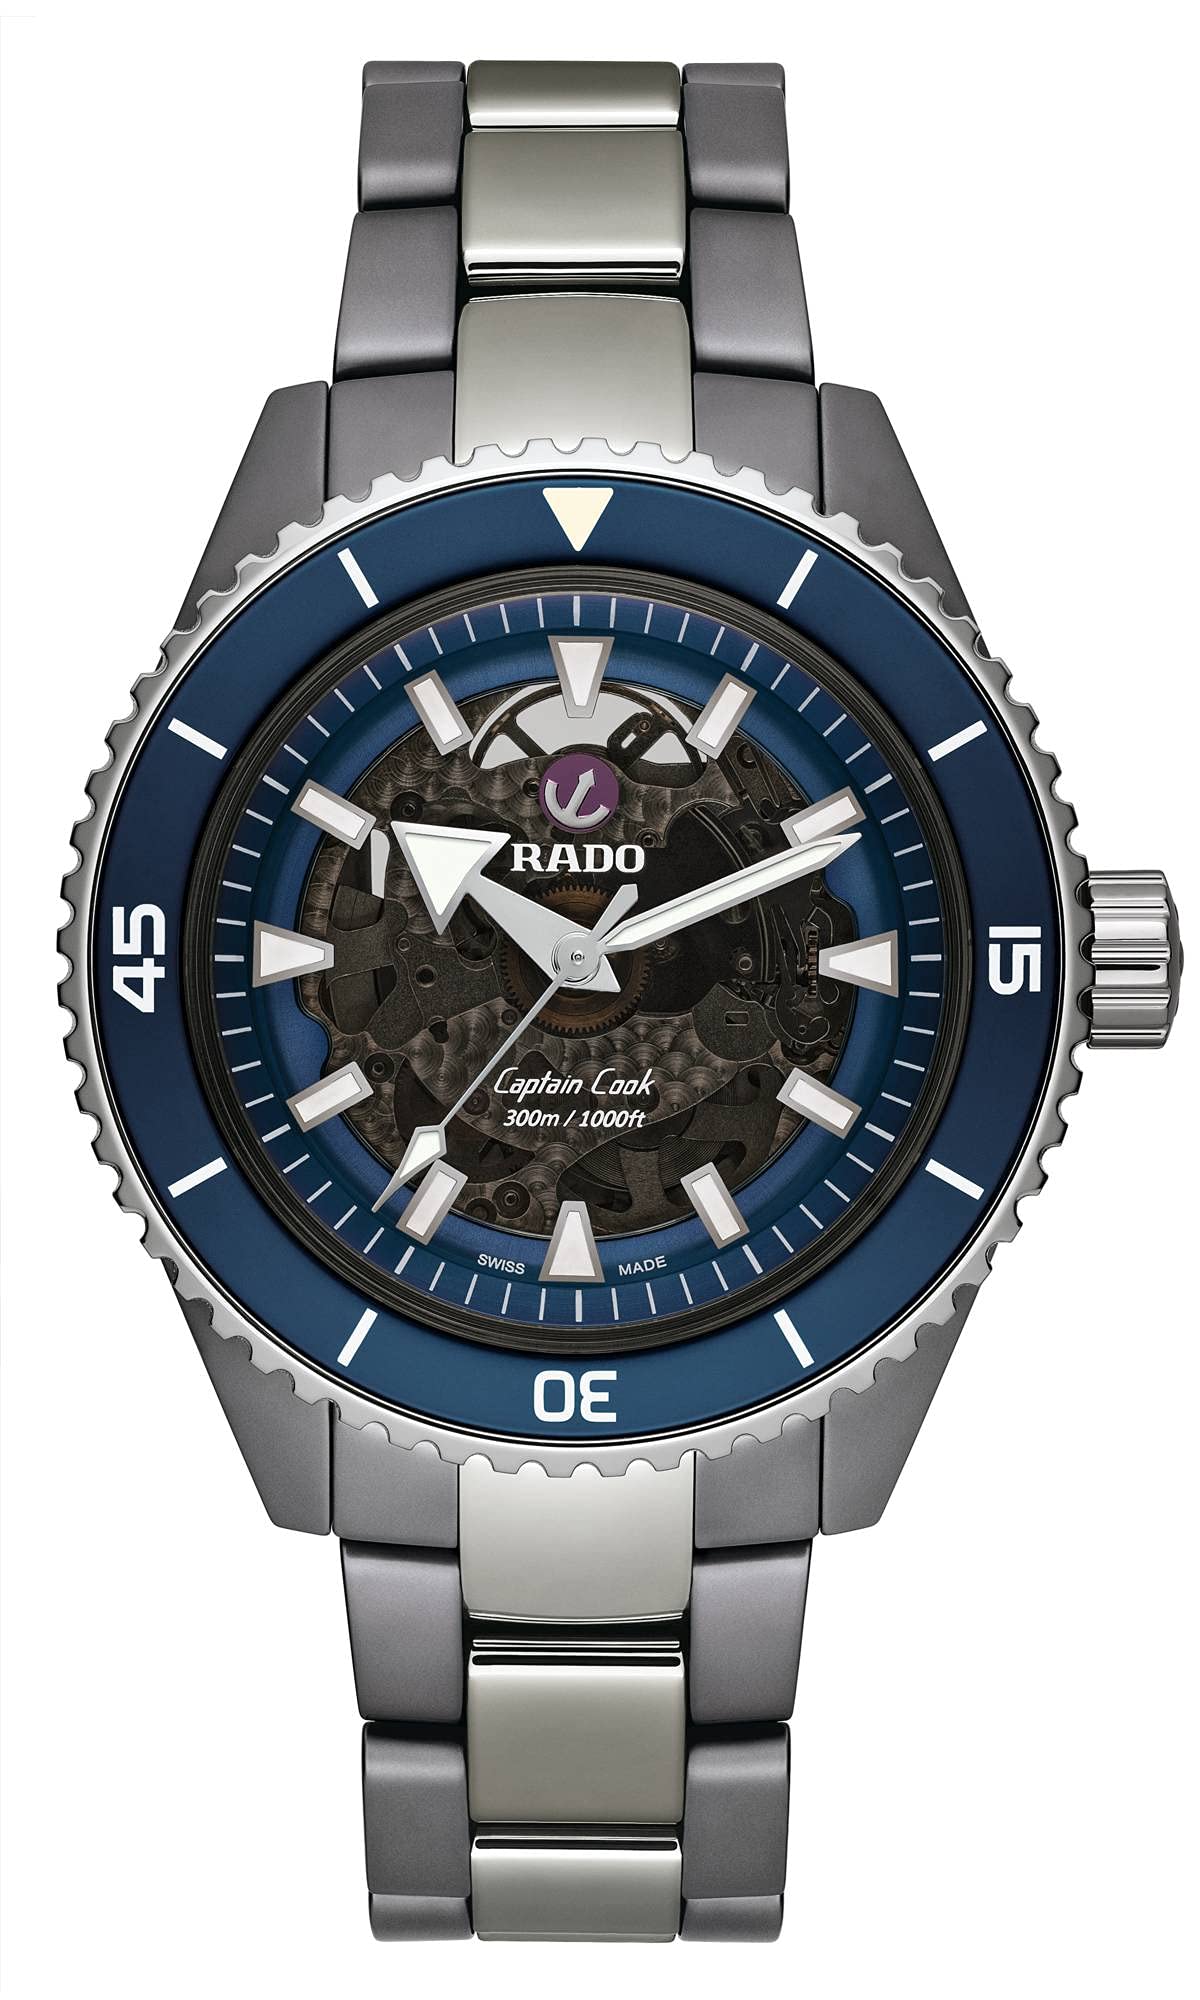 ラドー RADO 公式 腕時計 Captain Cook Plasma High-Tech Ceramicキャプテン クック プラズマハイテク